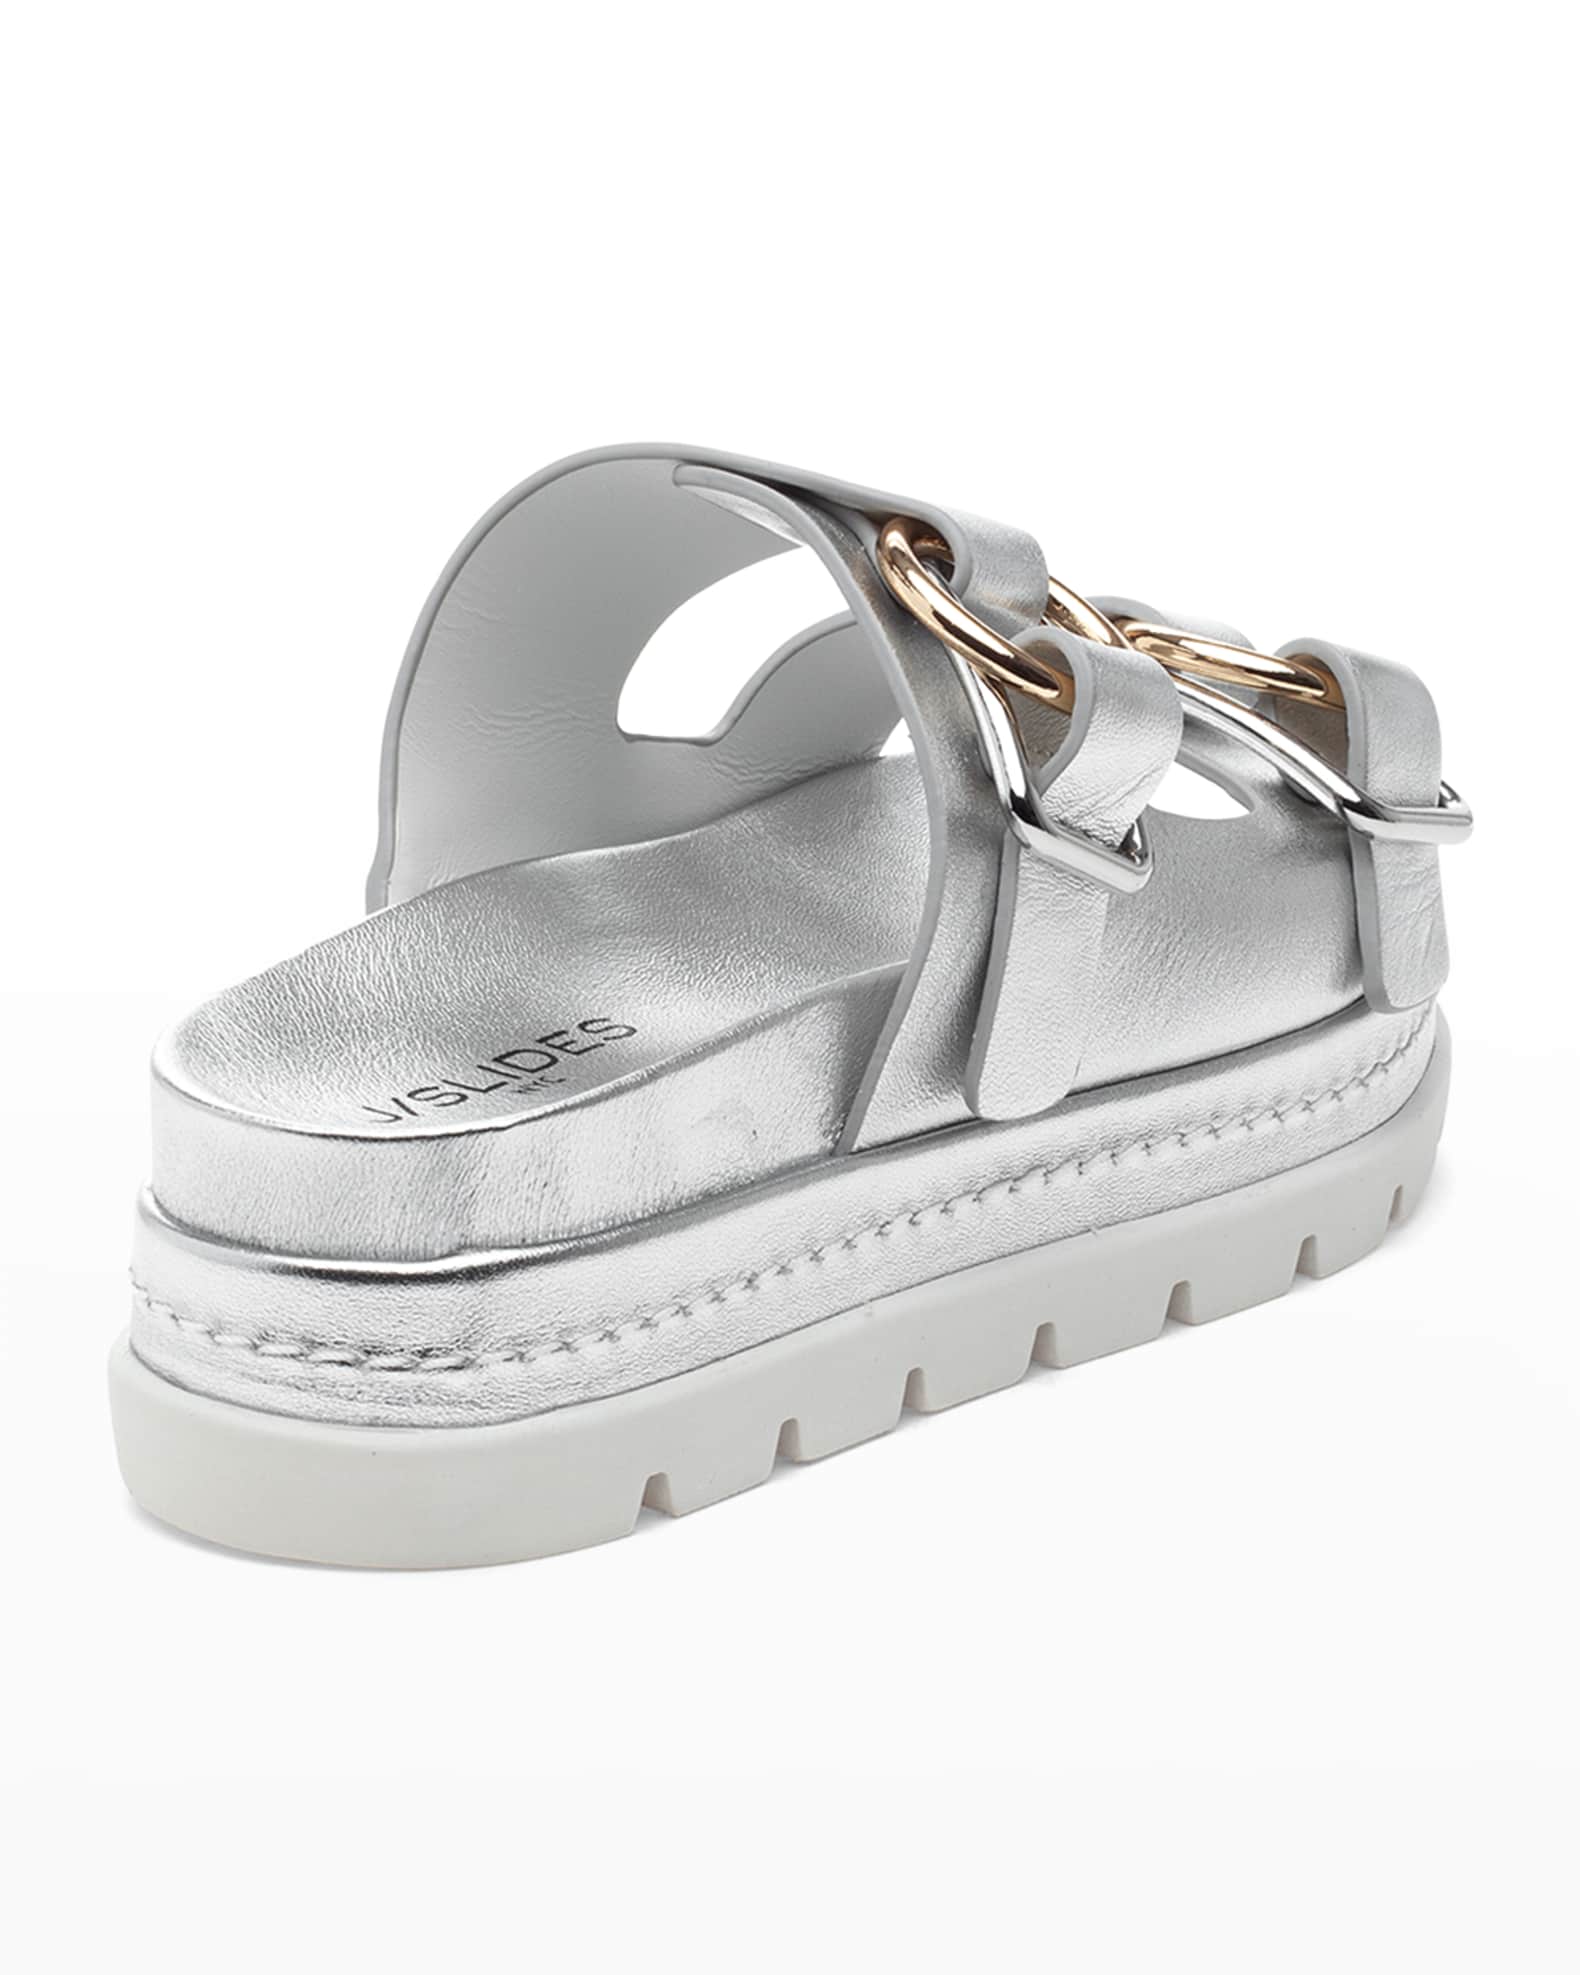 JSlides Baha Leather Double-Buckle Slide Sandals | Neiman Marcus